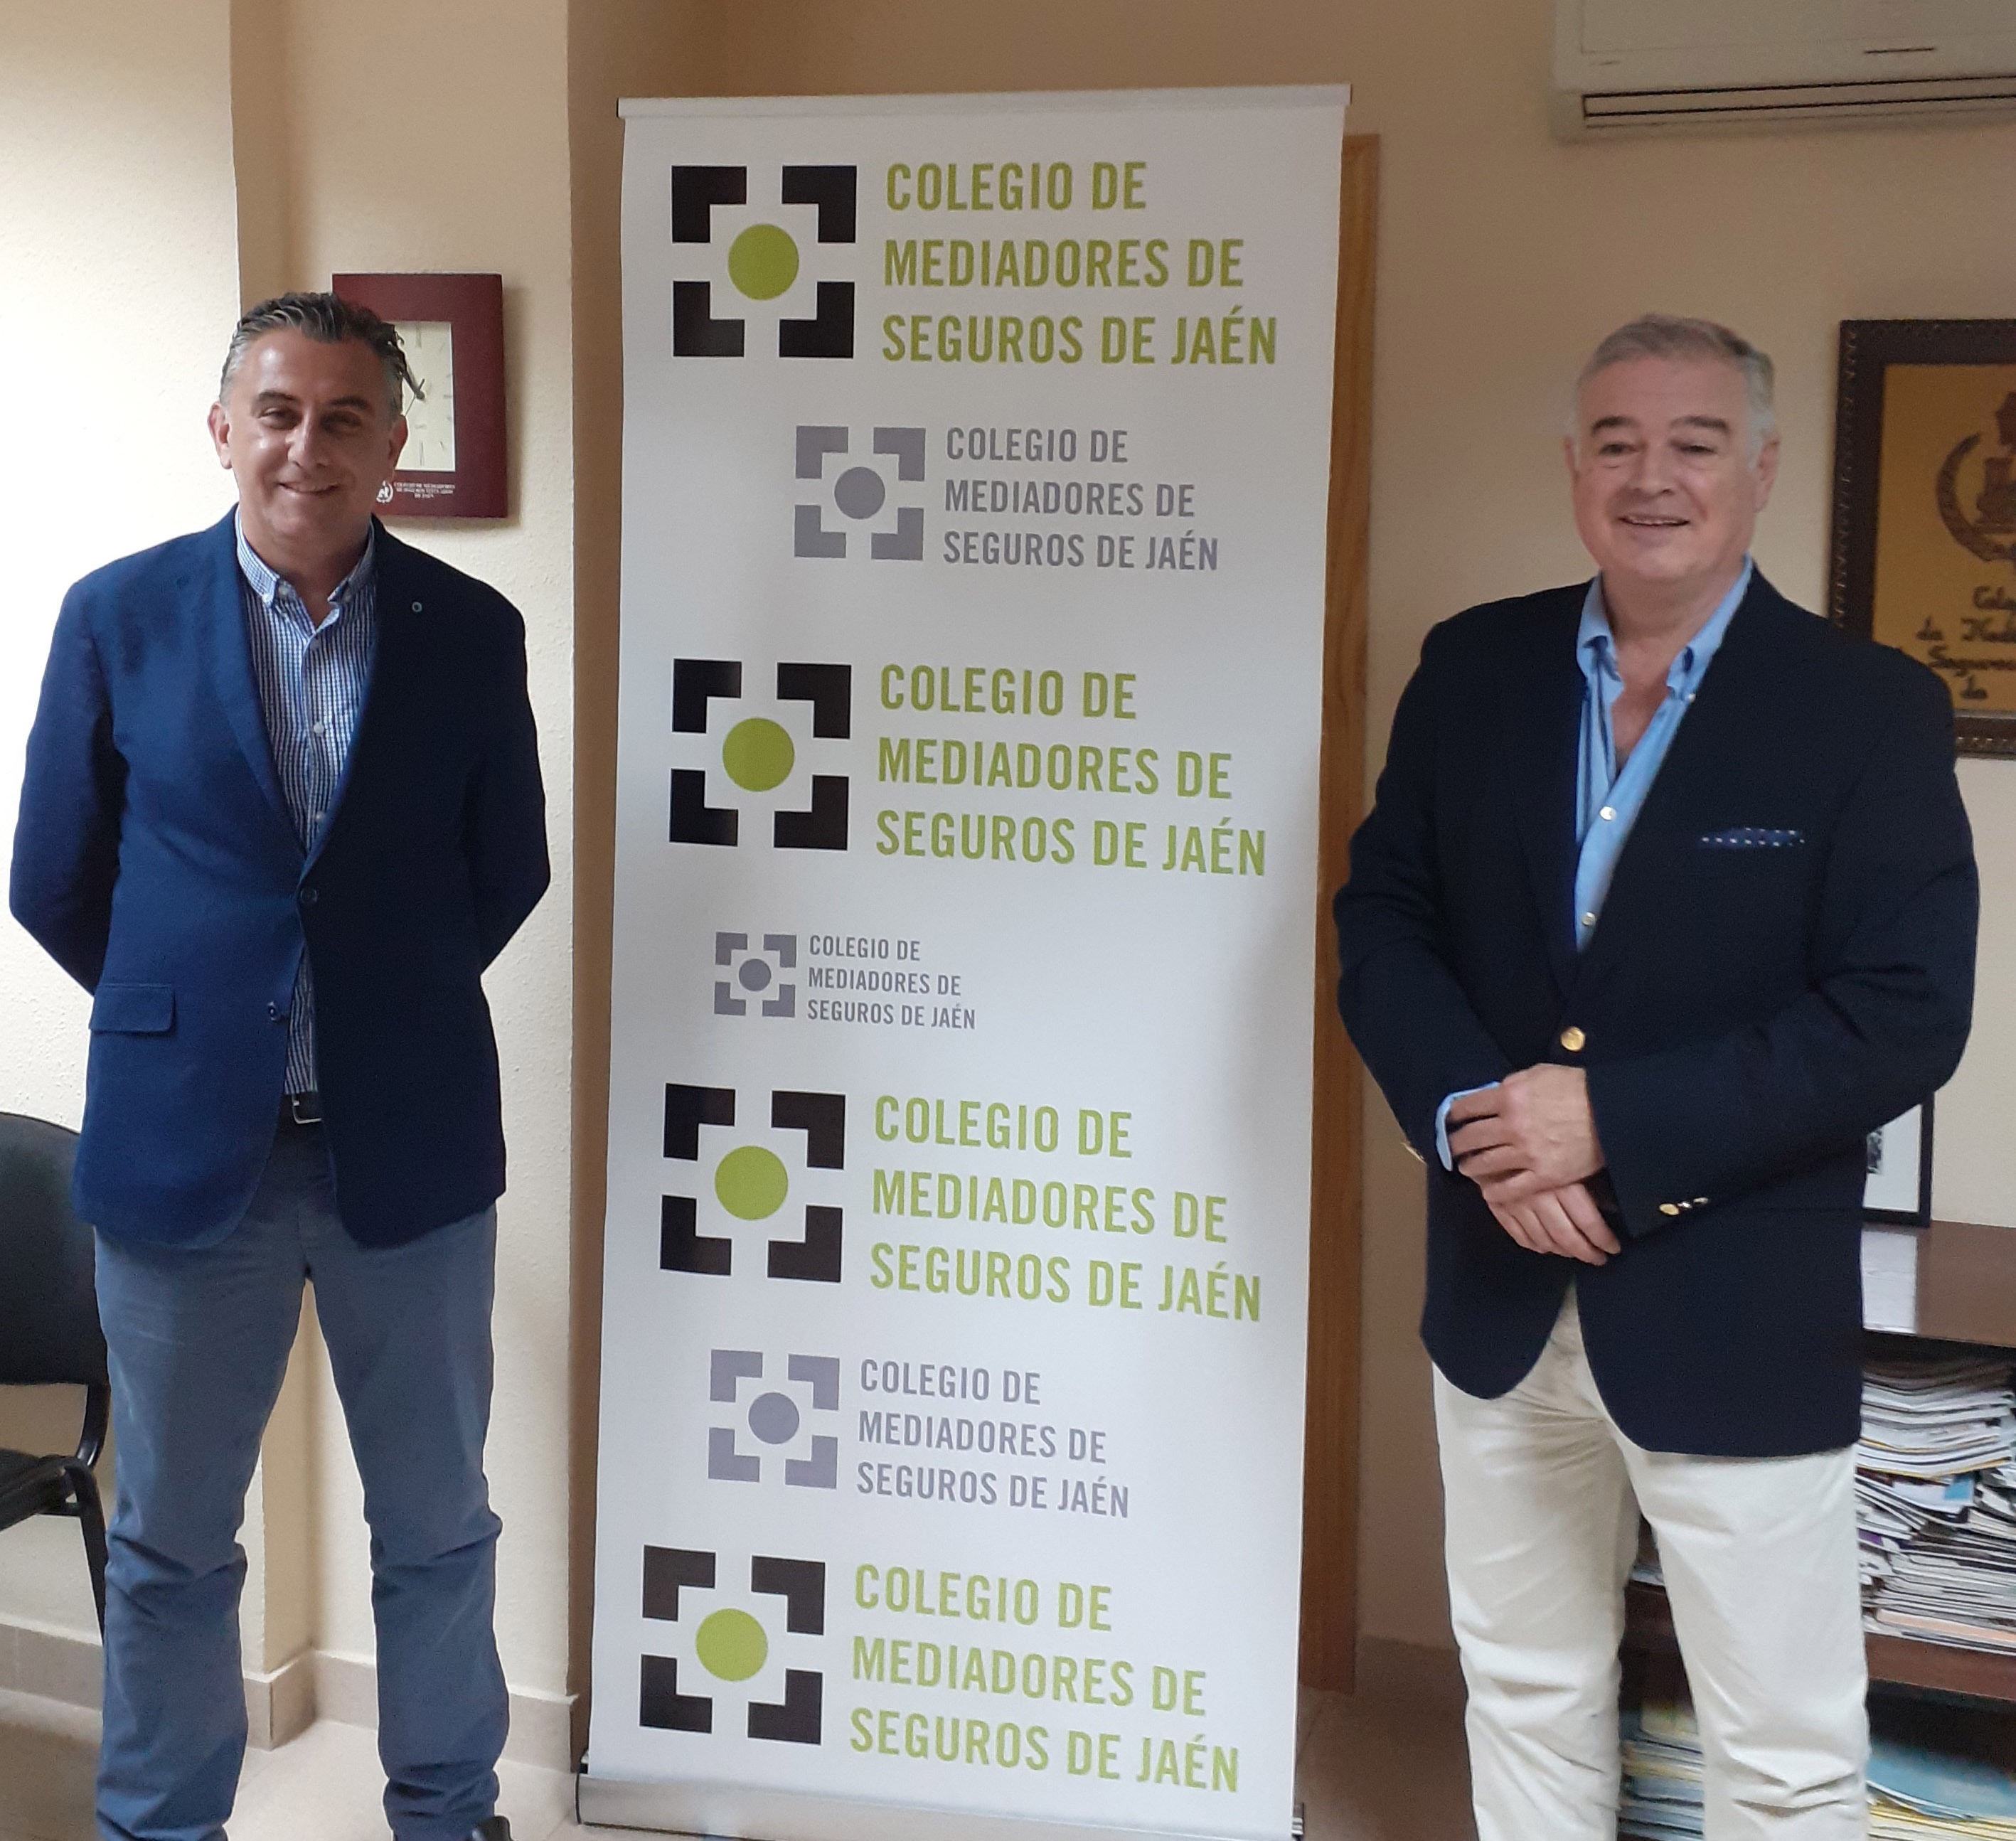 Acord Col·legi de Mediadors Jaén